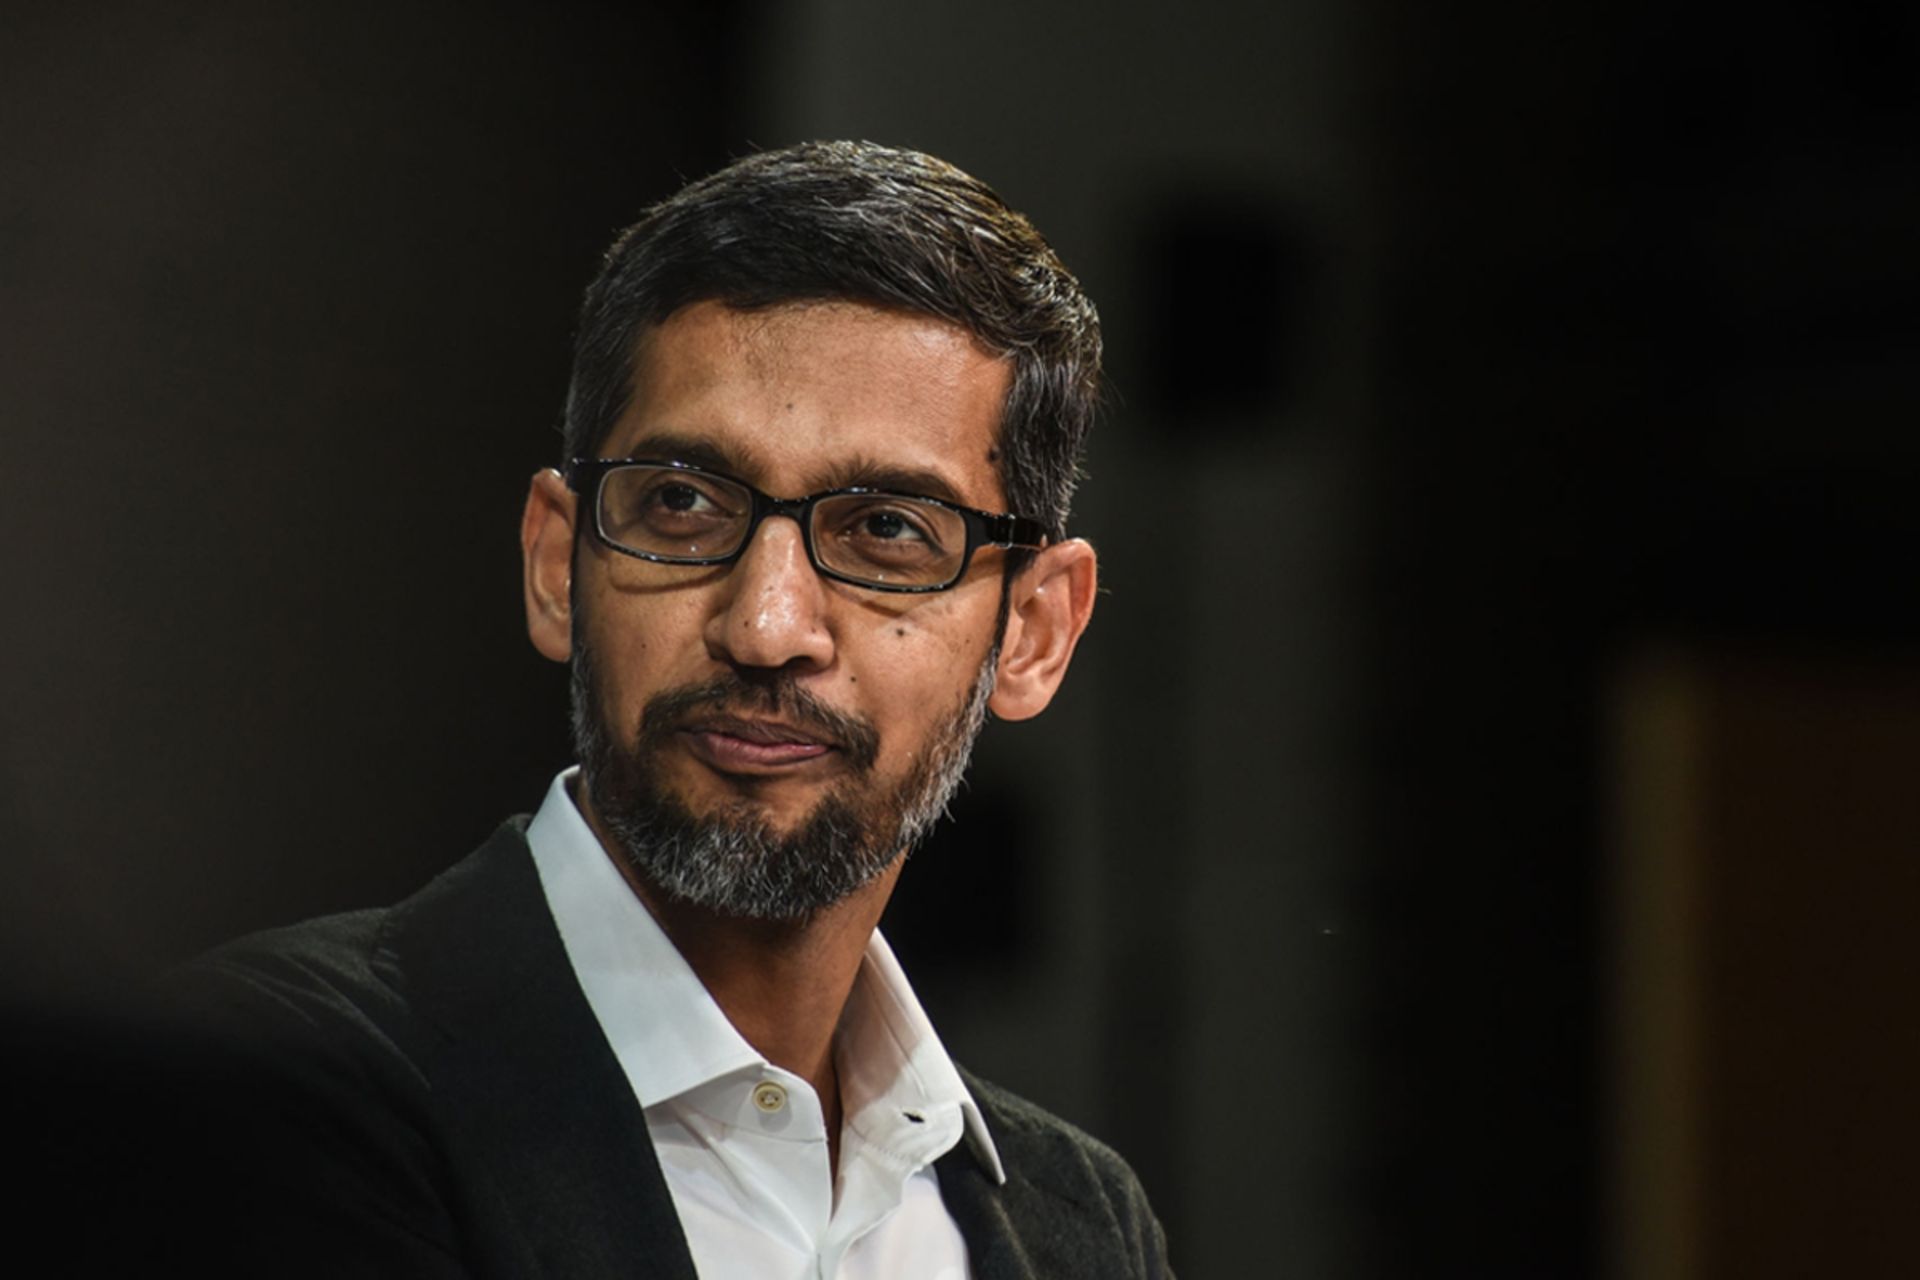 سوندار پیچای / Sundar Pichai مدیرعامل گوگل با عینک و کت و شلوار